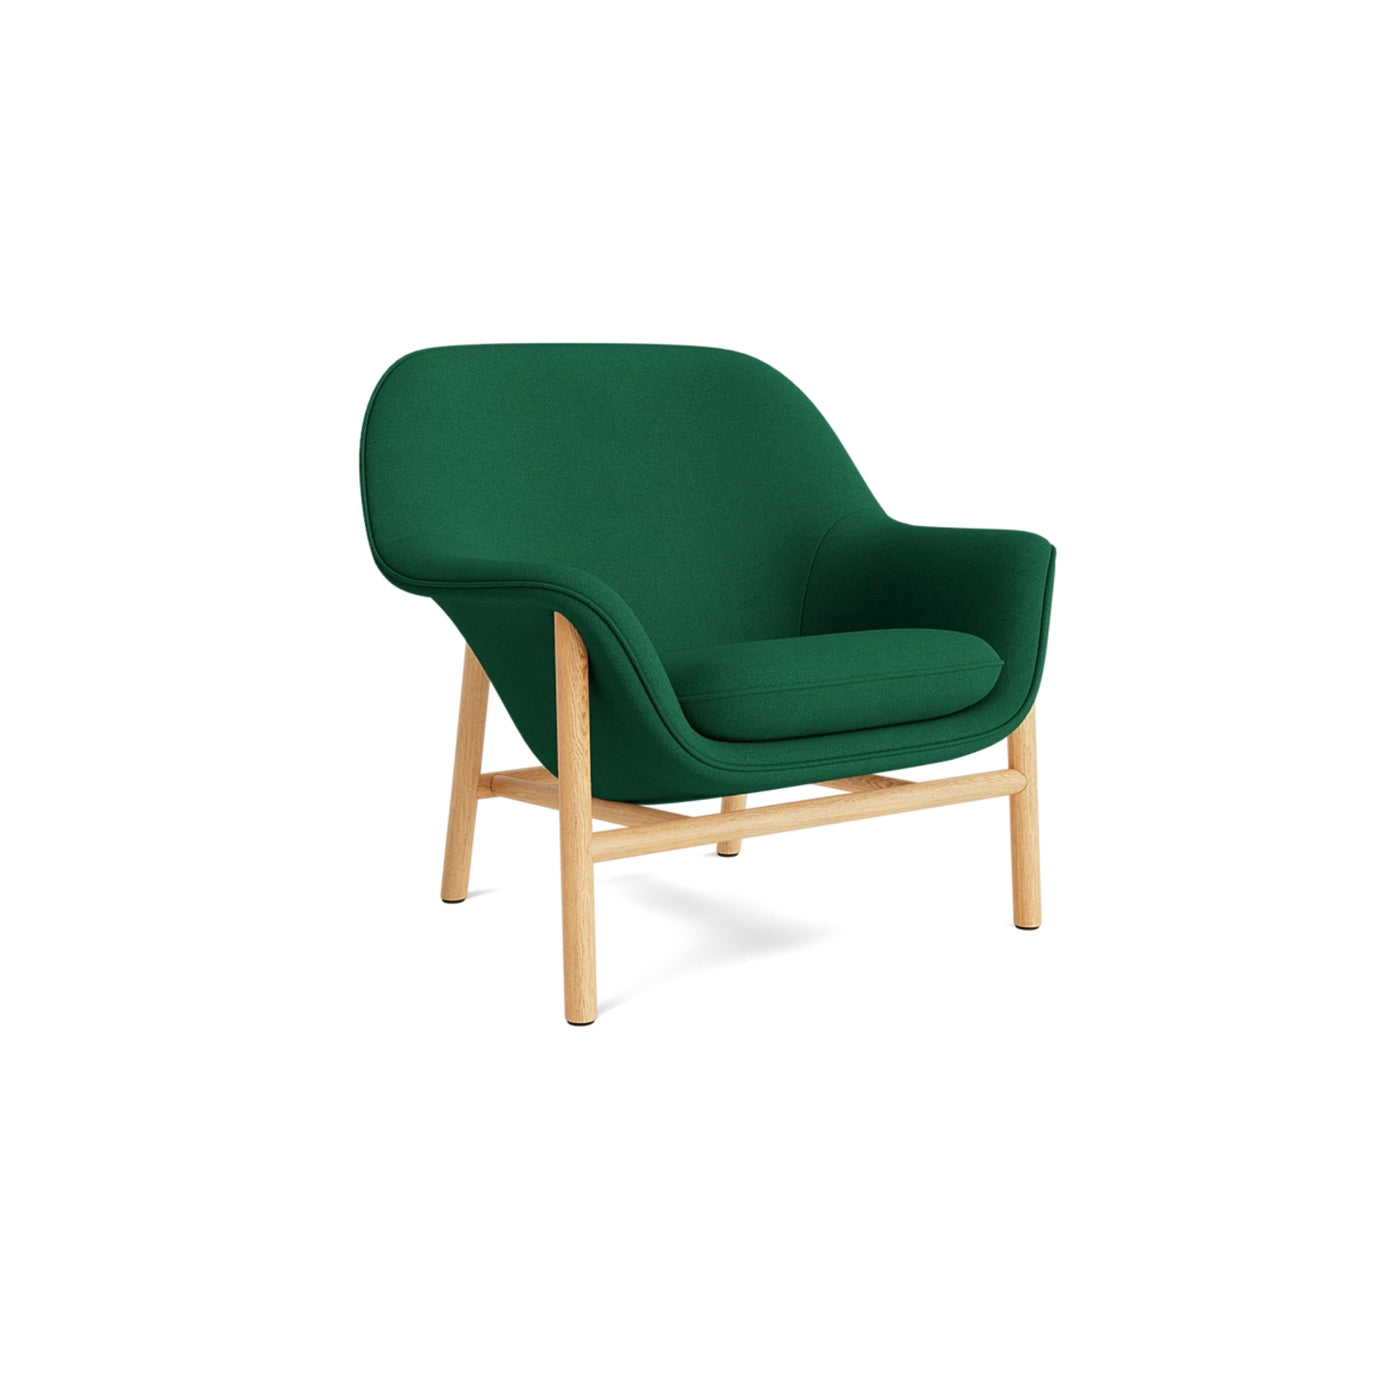 Normann Copenhagen Drape Lounge Chair at someday designs. #colour_hallingdal-944